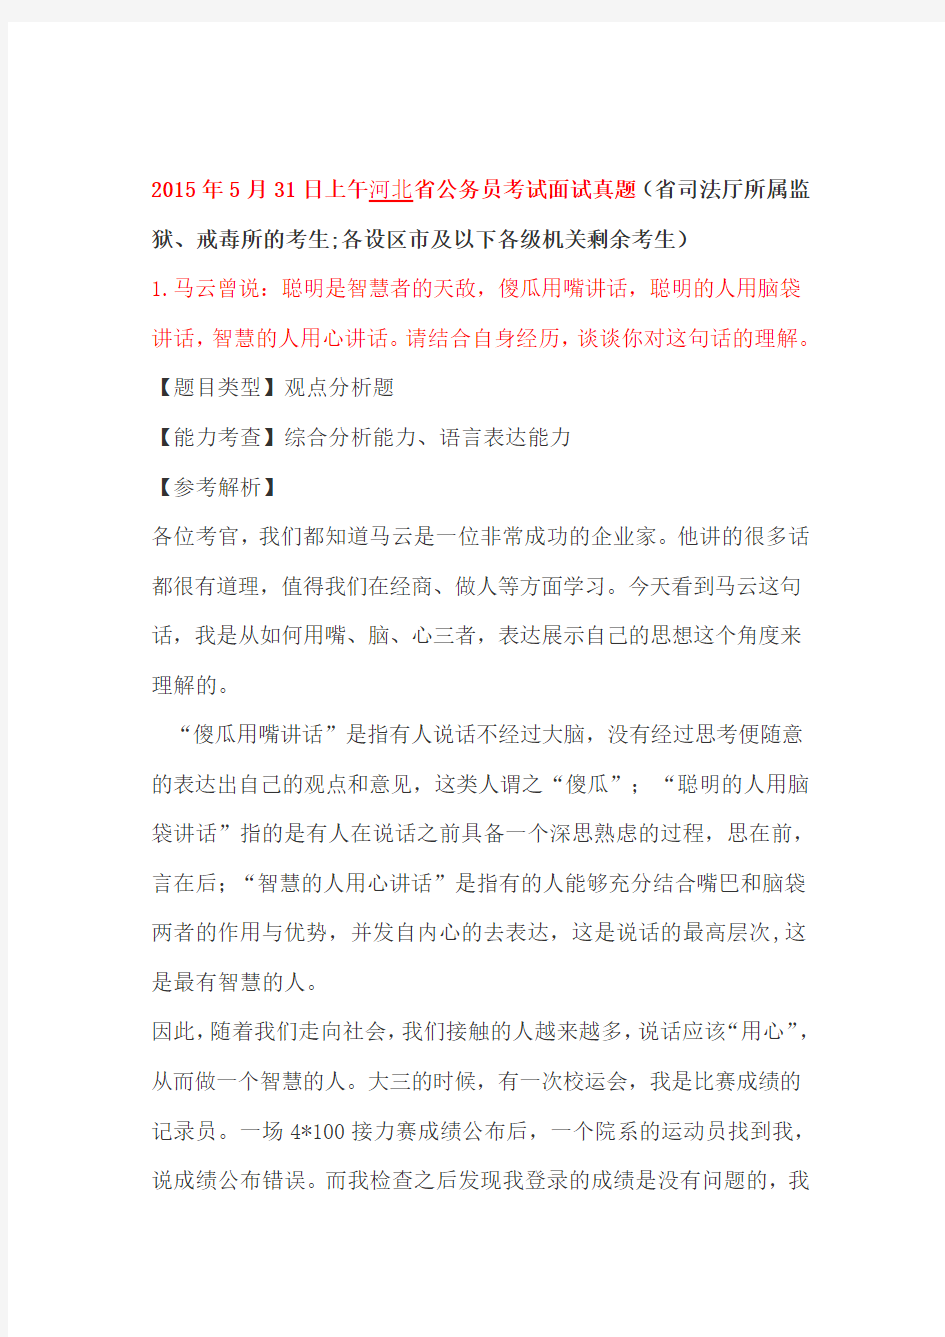 2015年5月31日上午,30日河北省直公务员考试面试真题